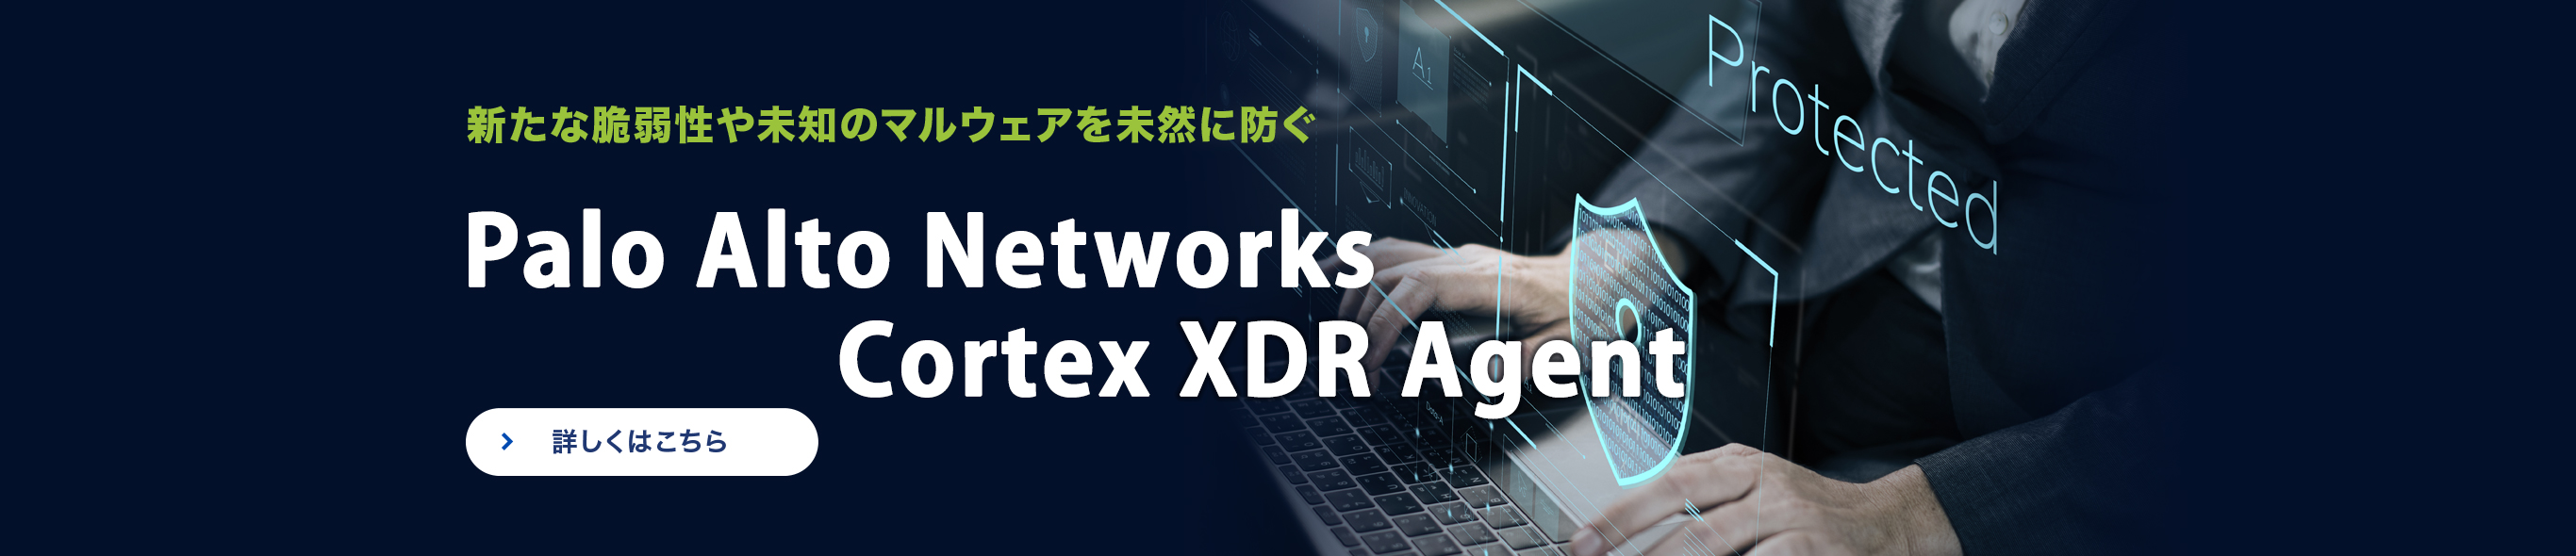 新たな脆弱性や未知のマルウェアを未然に防ぐ Palo Alto Networks Cortex XDR Agent